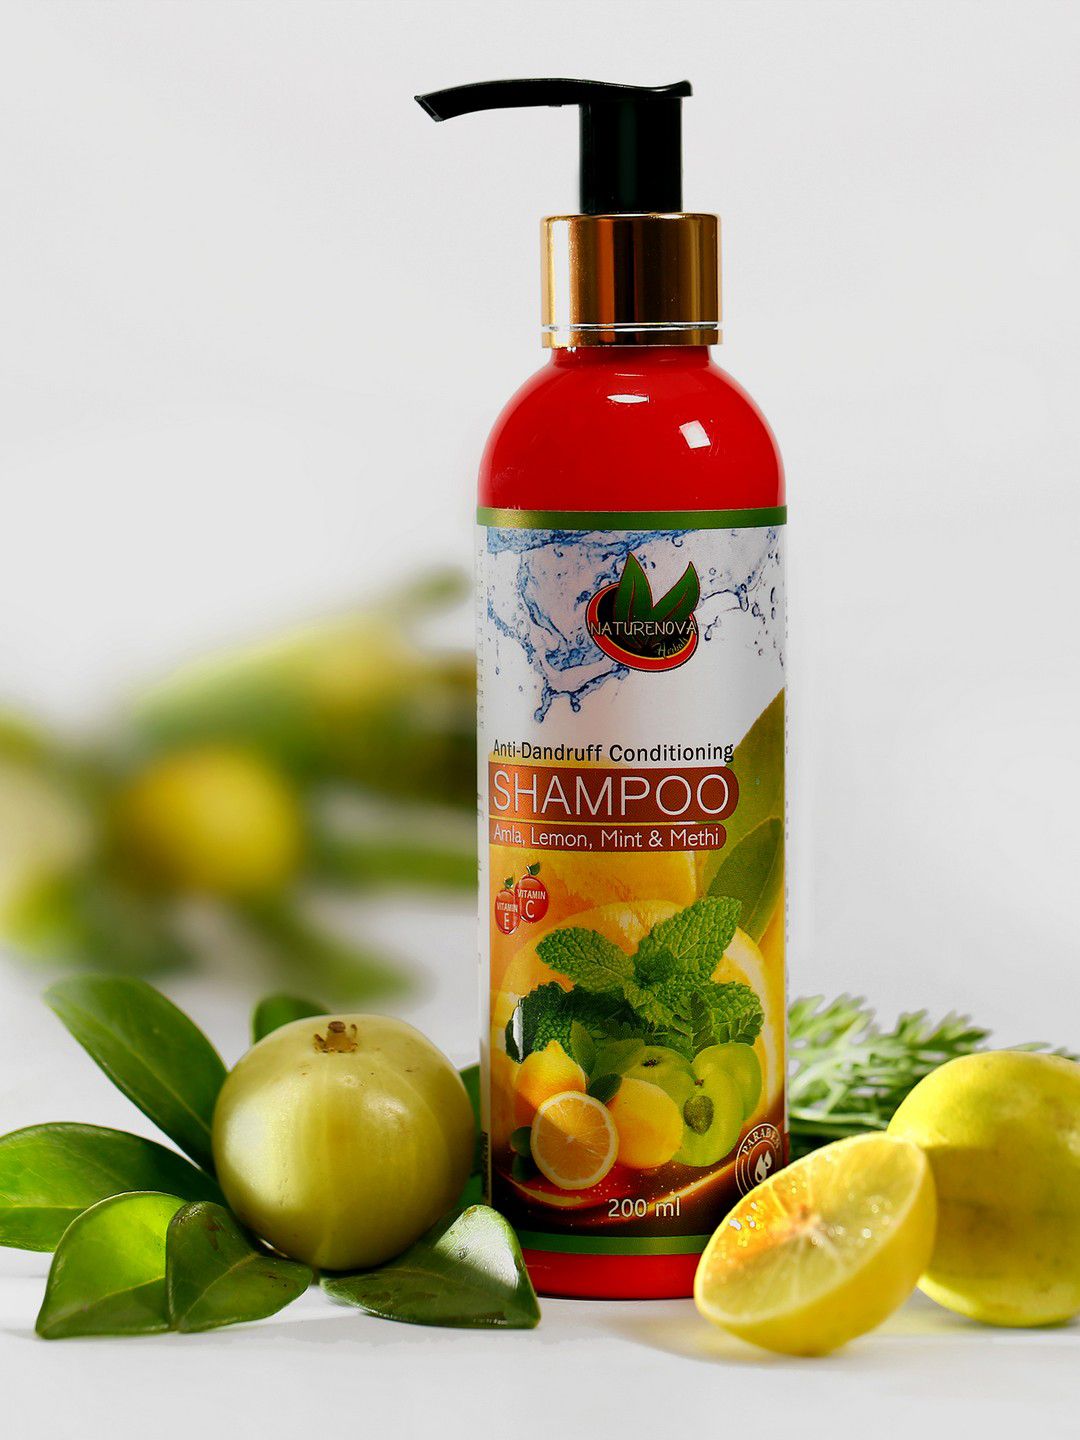 NatureNova Herbals Anti-Dandruff Conditioning Shampoo with Amla & Lemon - 200ml Price in India